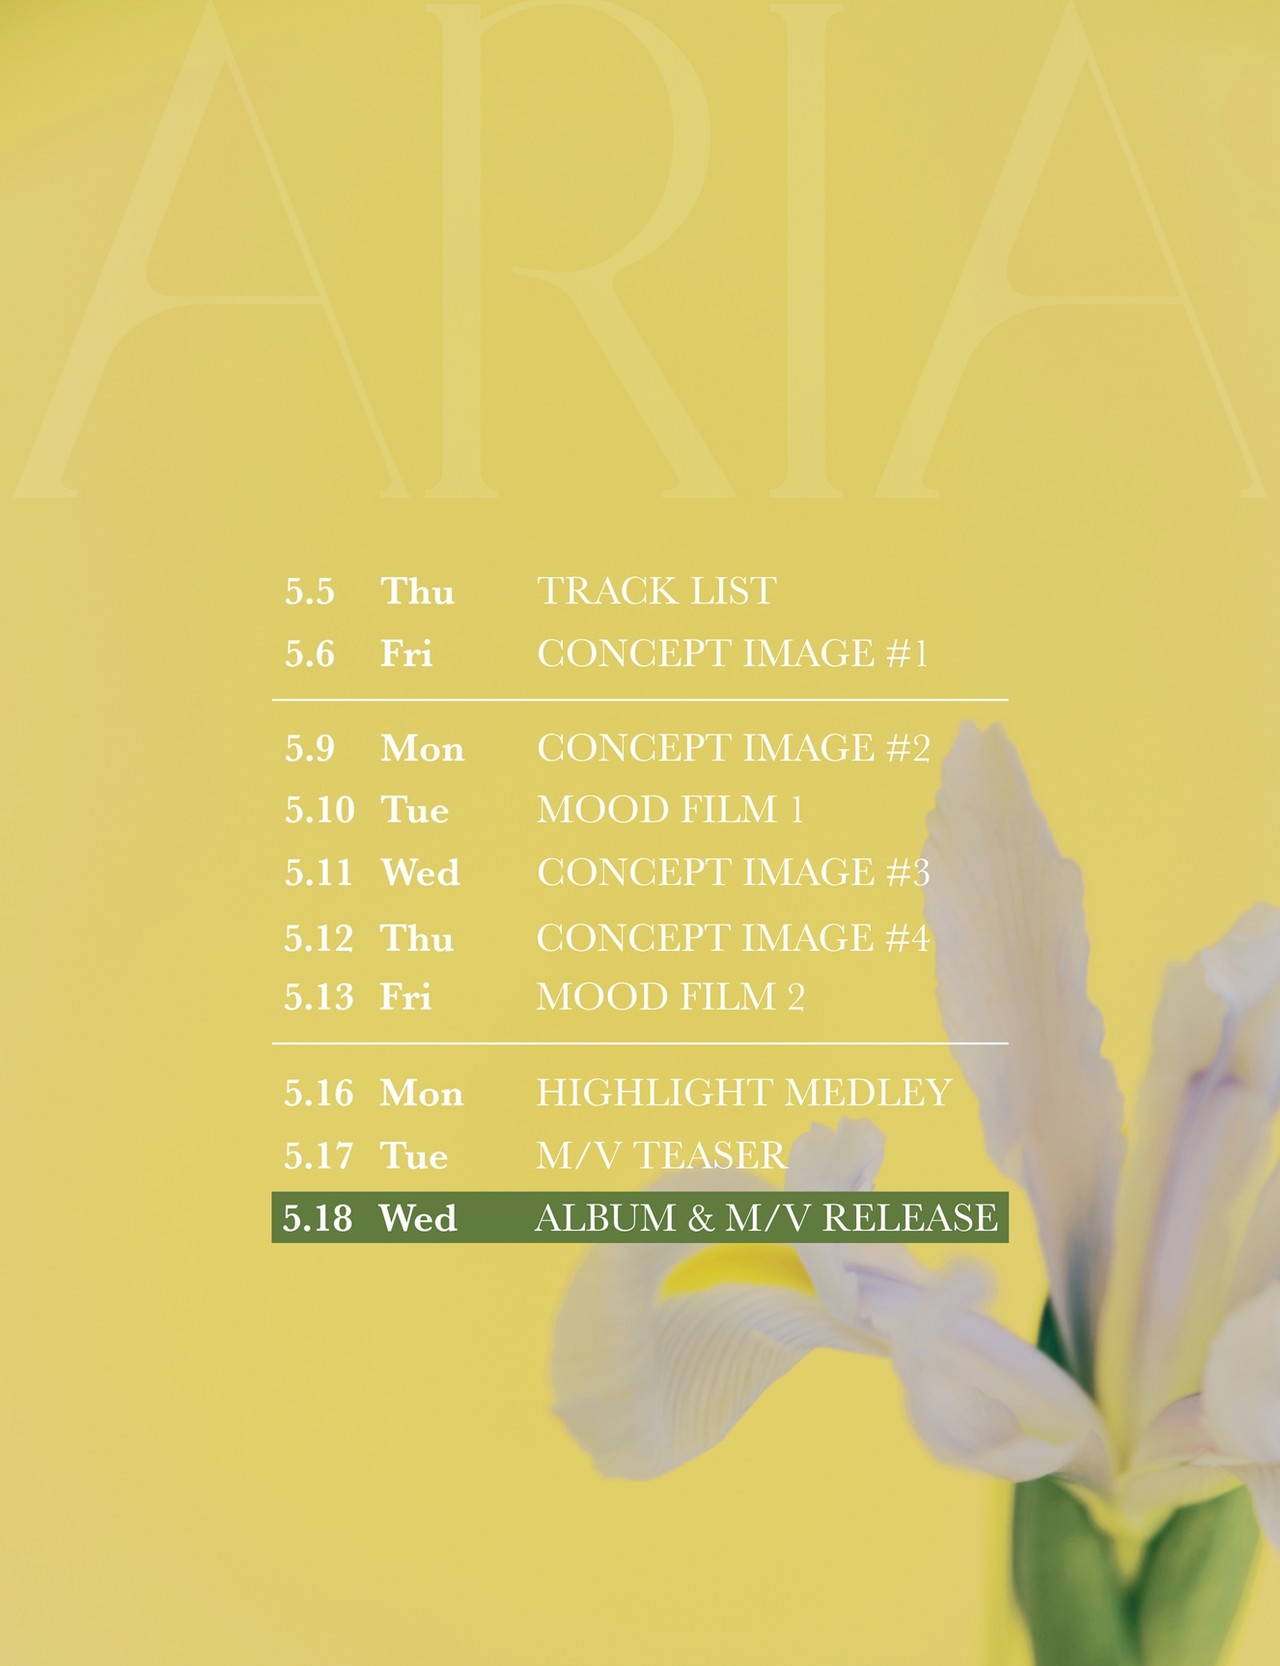 가수 예린 미니 1집 ‘ARIA’ 스케줄 티저 이미지 / 사진 제공 : 써브라임